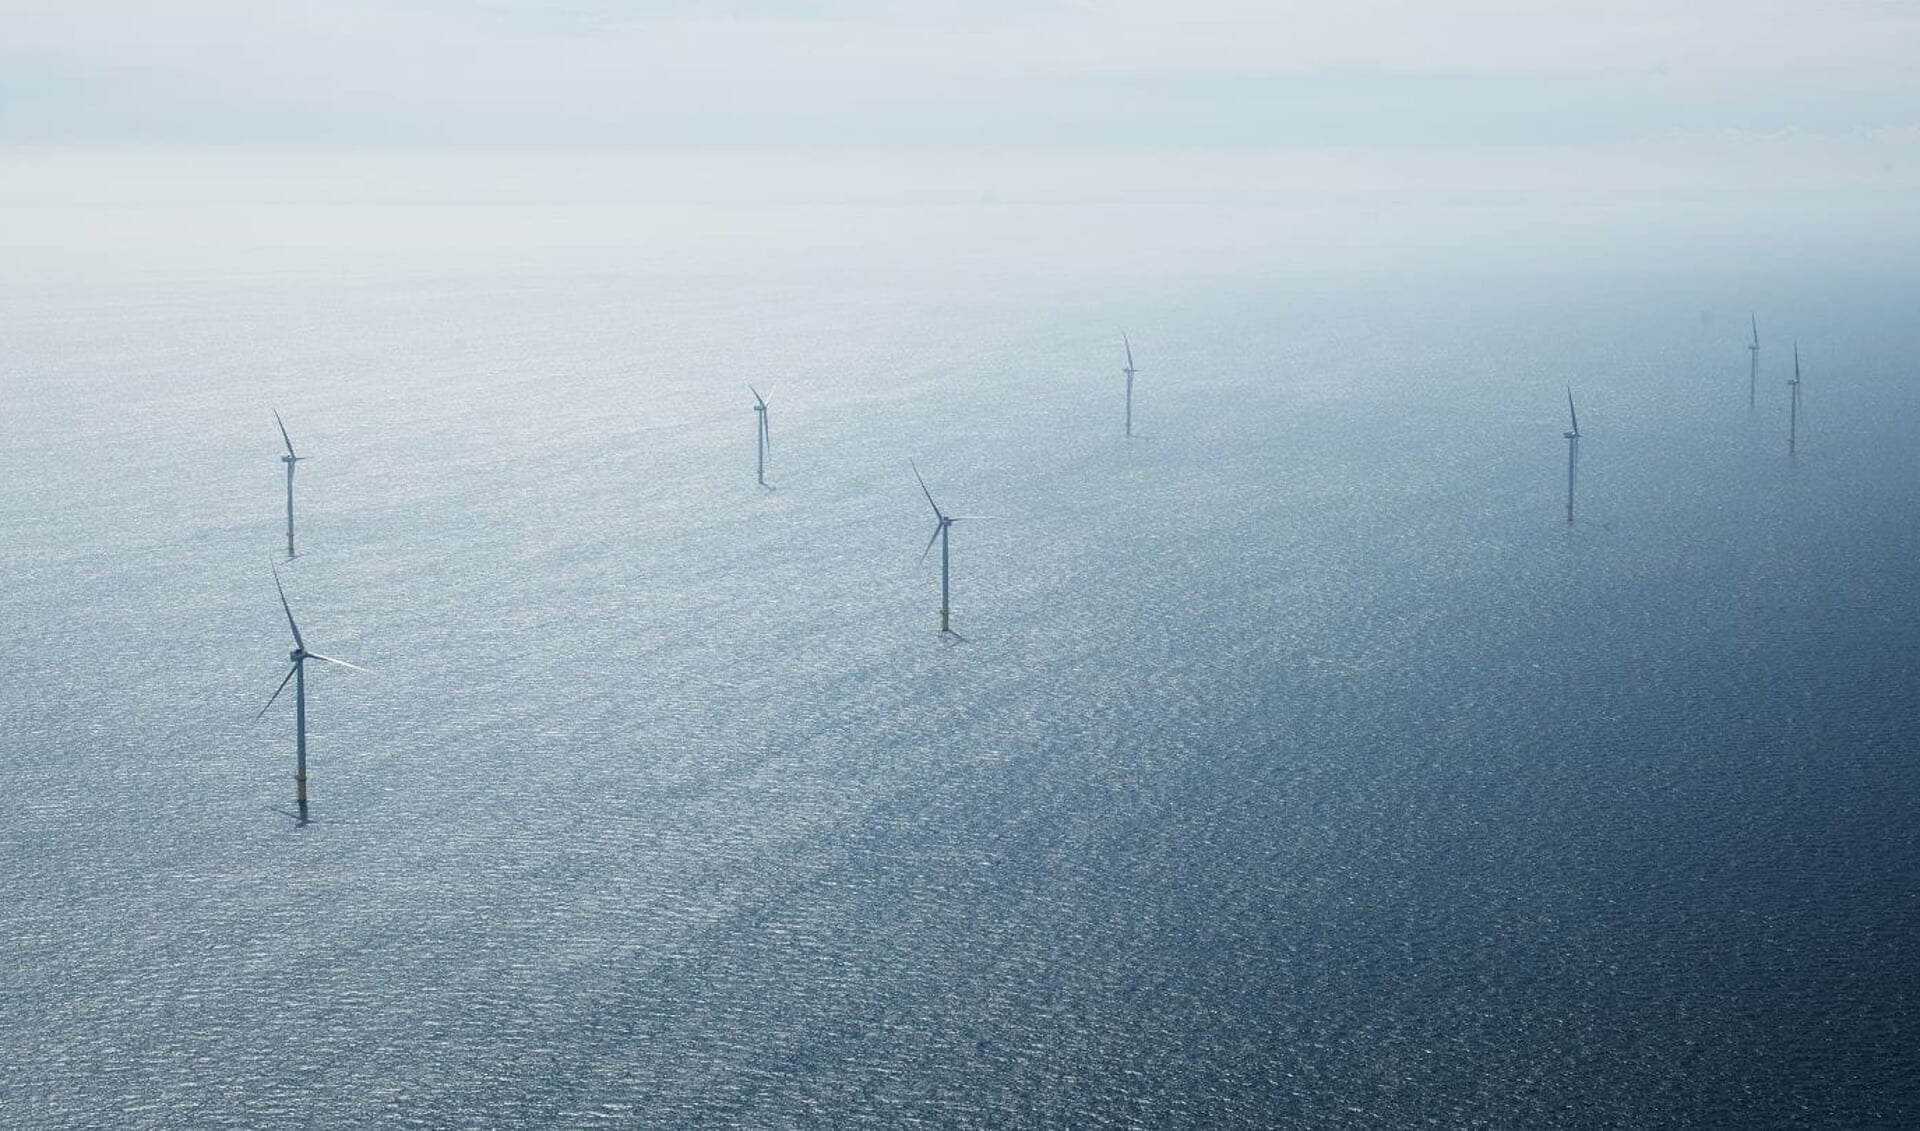 Het 112 vierkante meter grote windpark in de Noordzee heeft 94 windturbines.